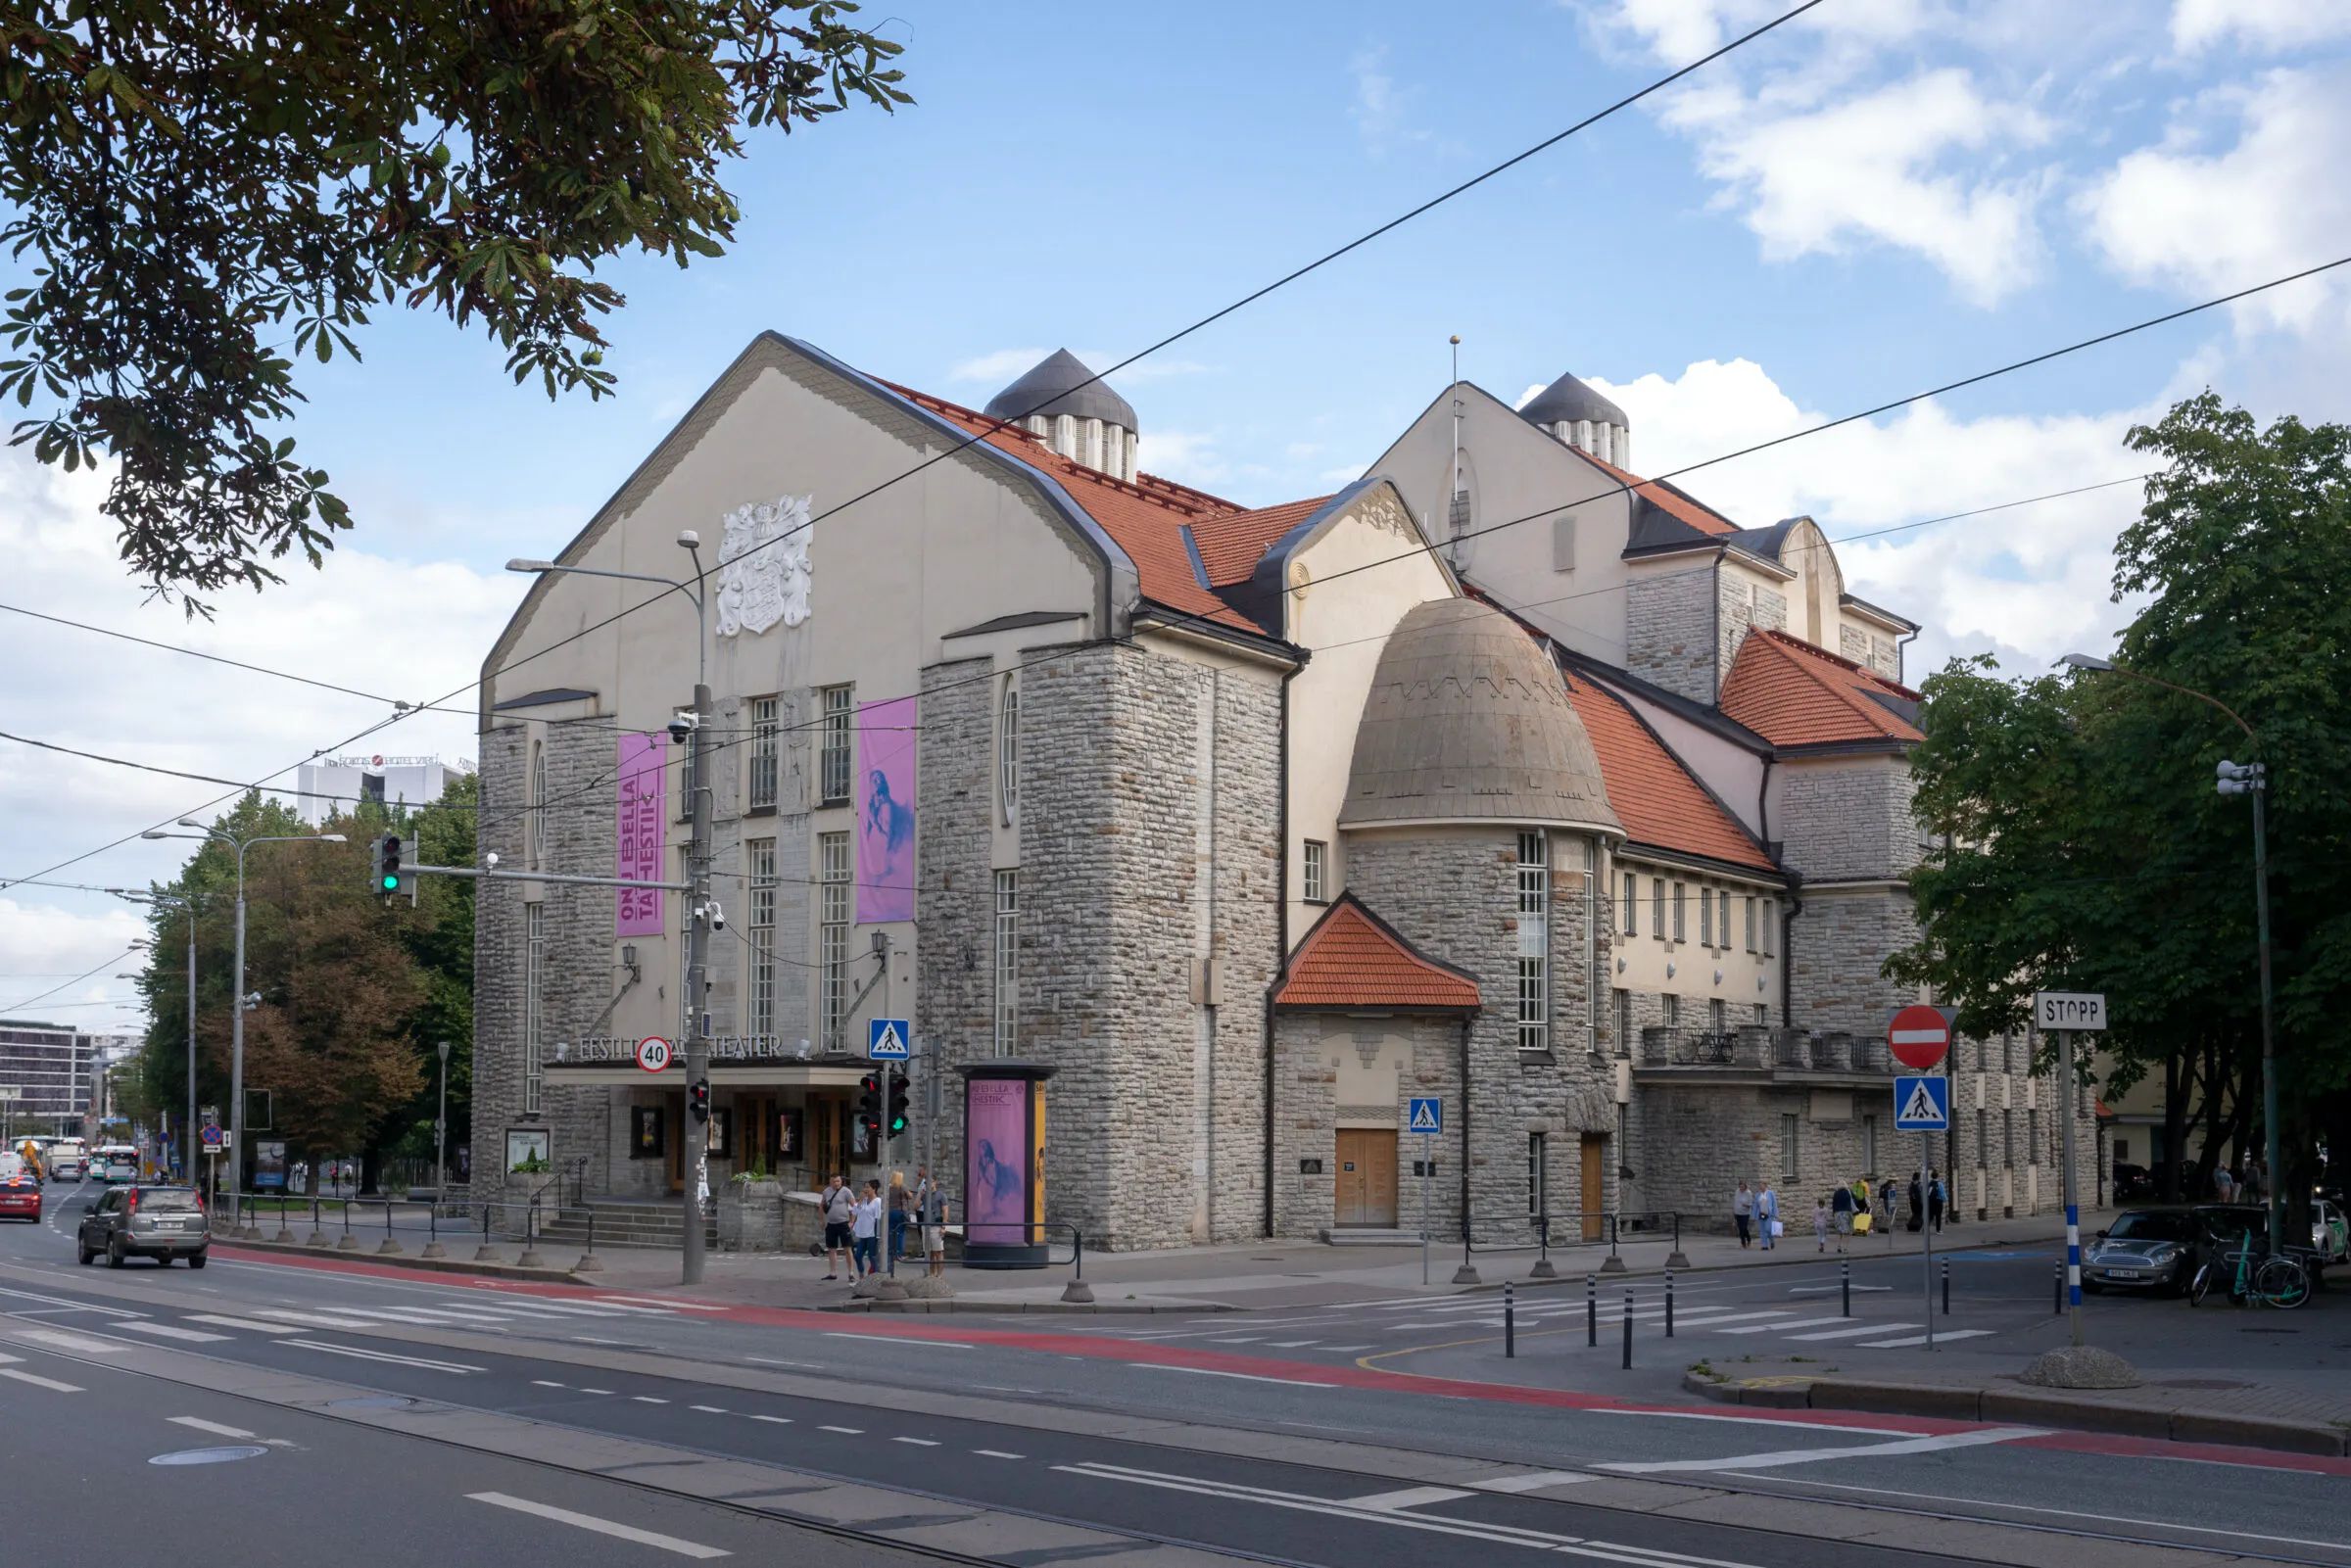 Pildil on Eesti Draamateatri hoone, mis asub Tallinna kesklinnas Pärnu maantee ääres. Tegu on ajaloolise hoonega, mille fassaad on osaliselt kivist laotud, osaliselt heledaks värvitud. Hoone katus on punast värvi.